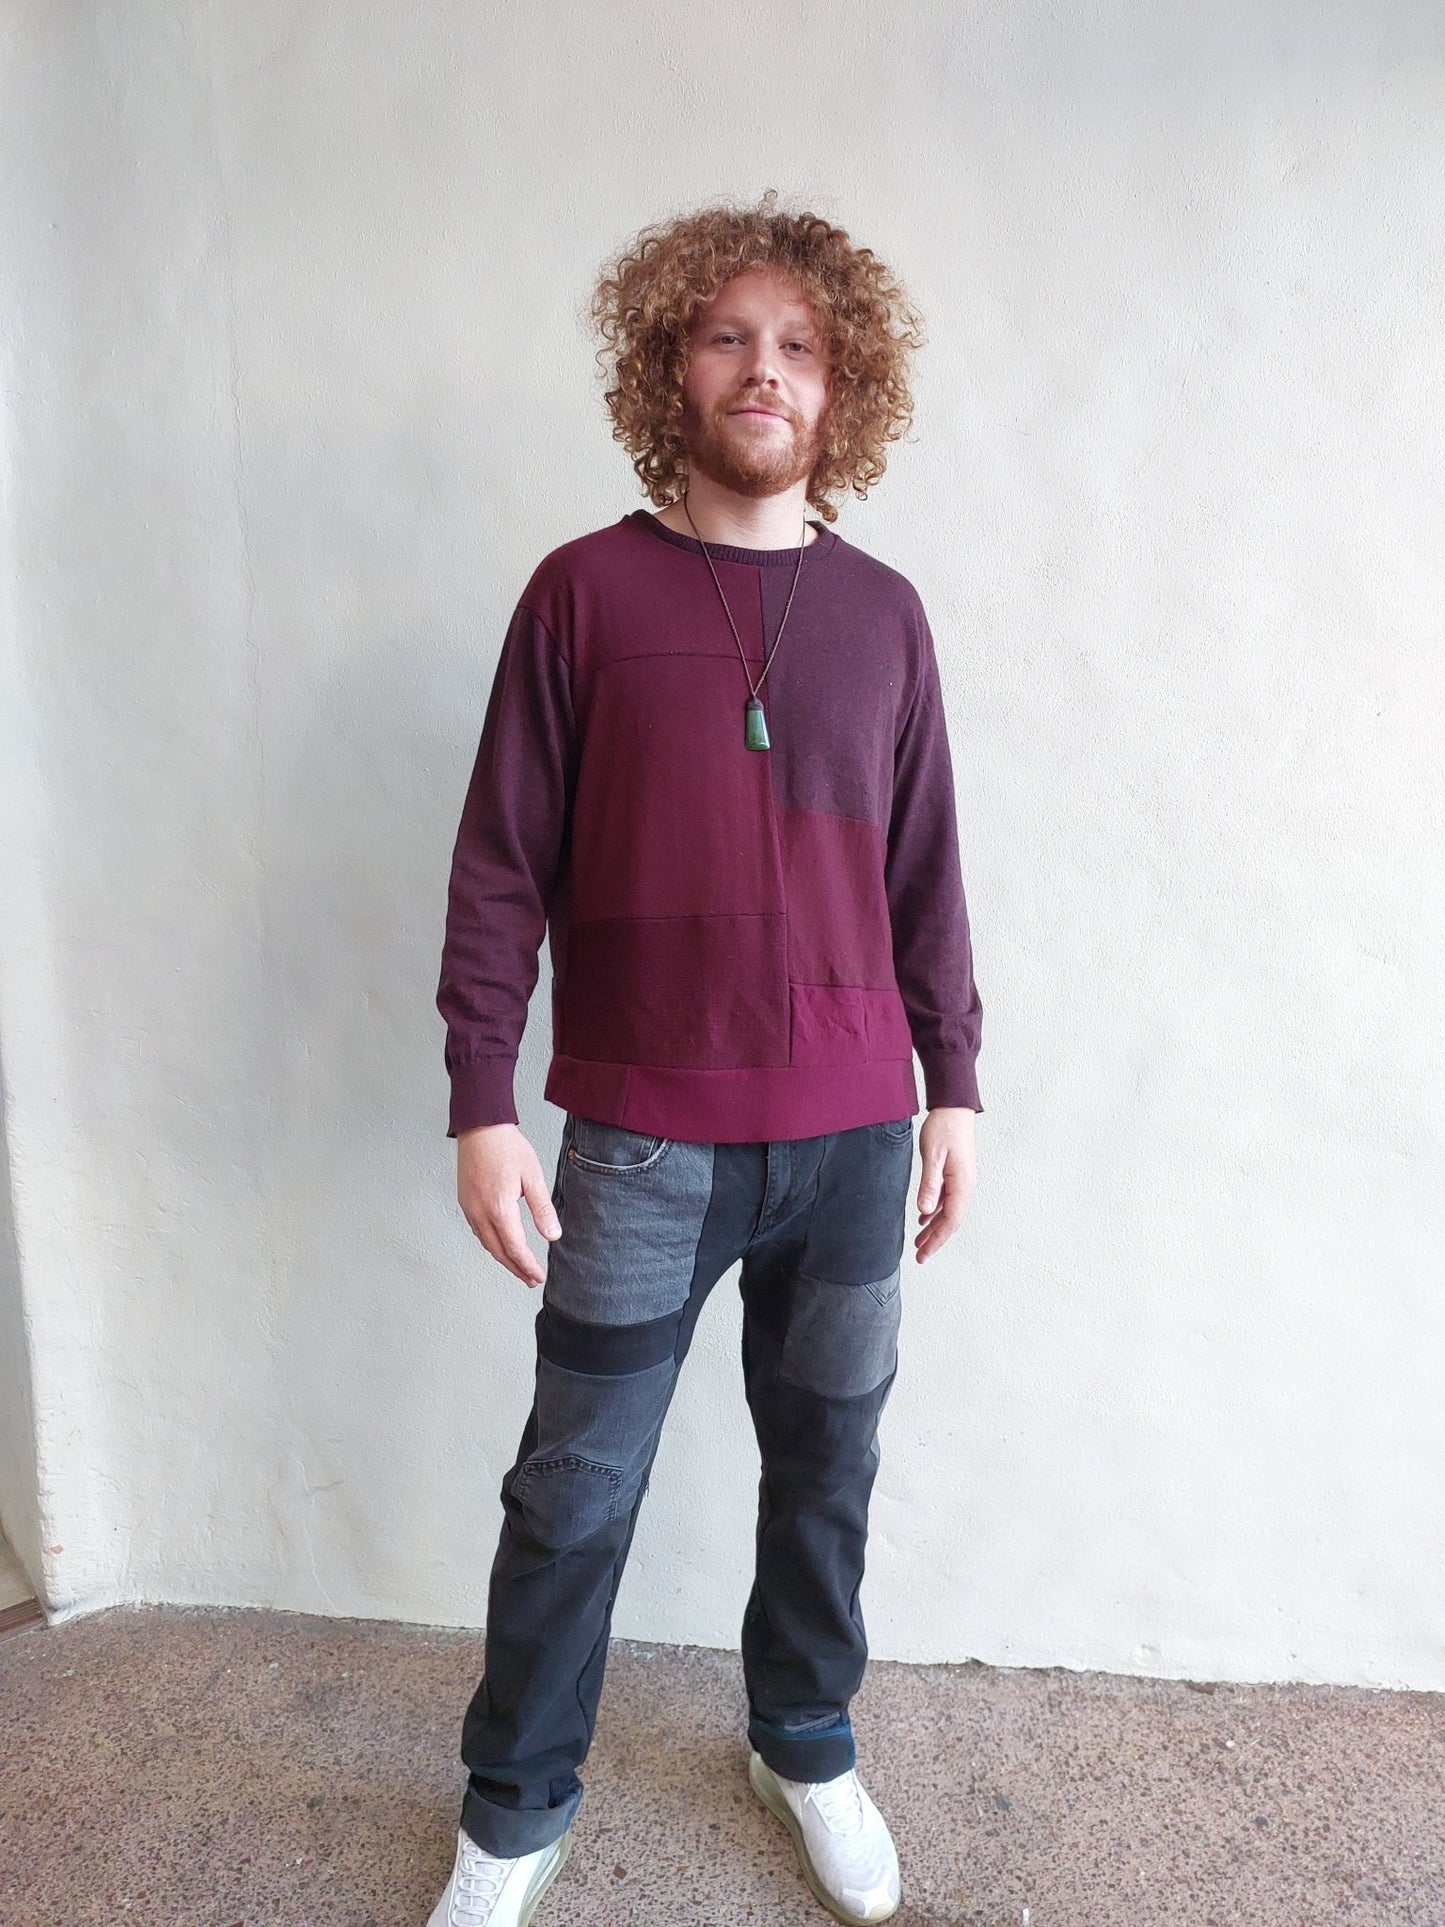 Mens patchwork jeans - Heke design